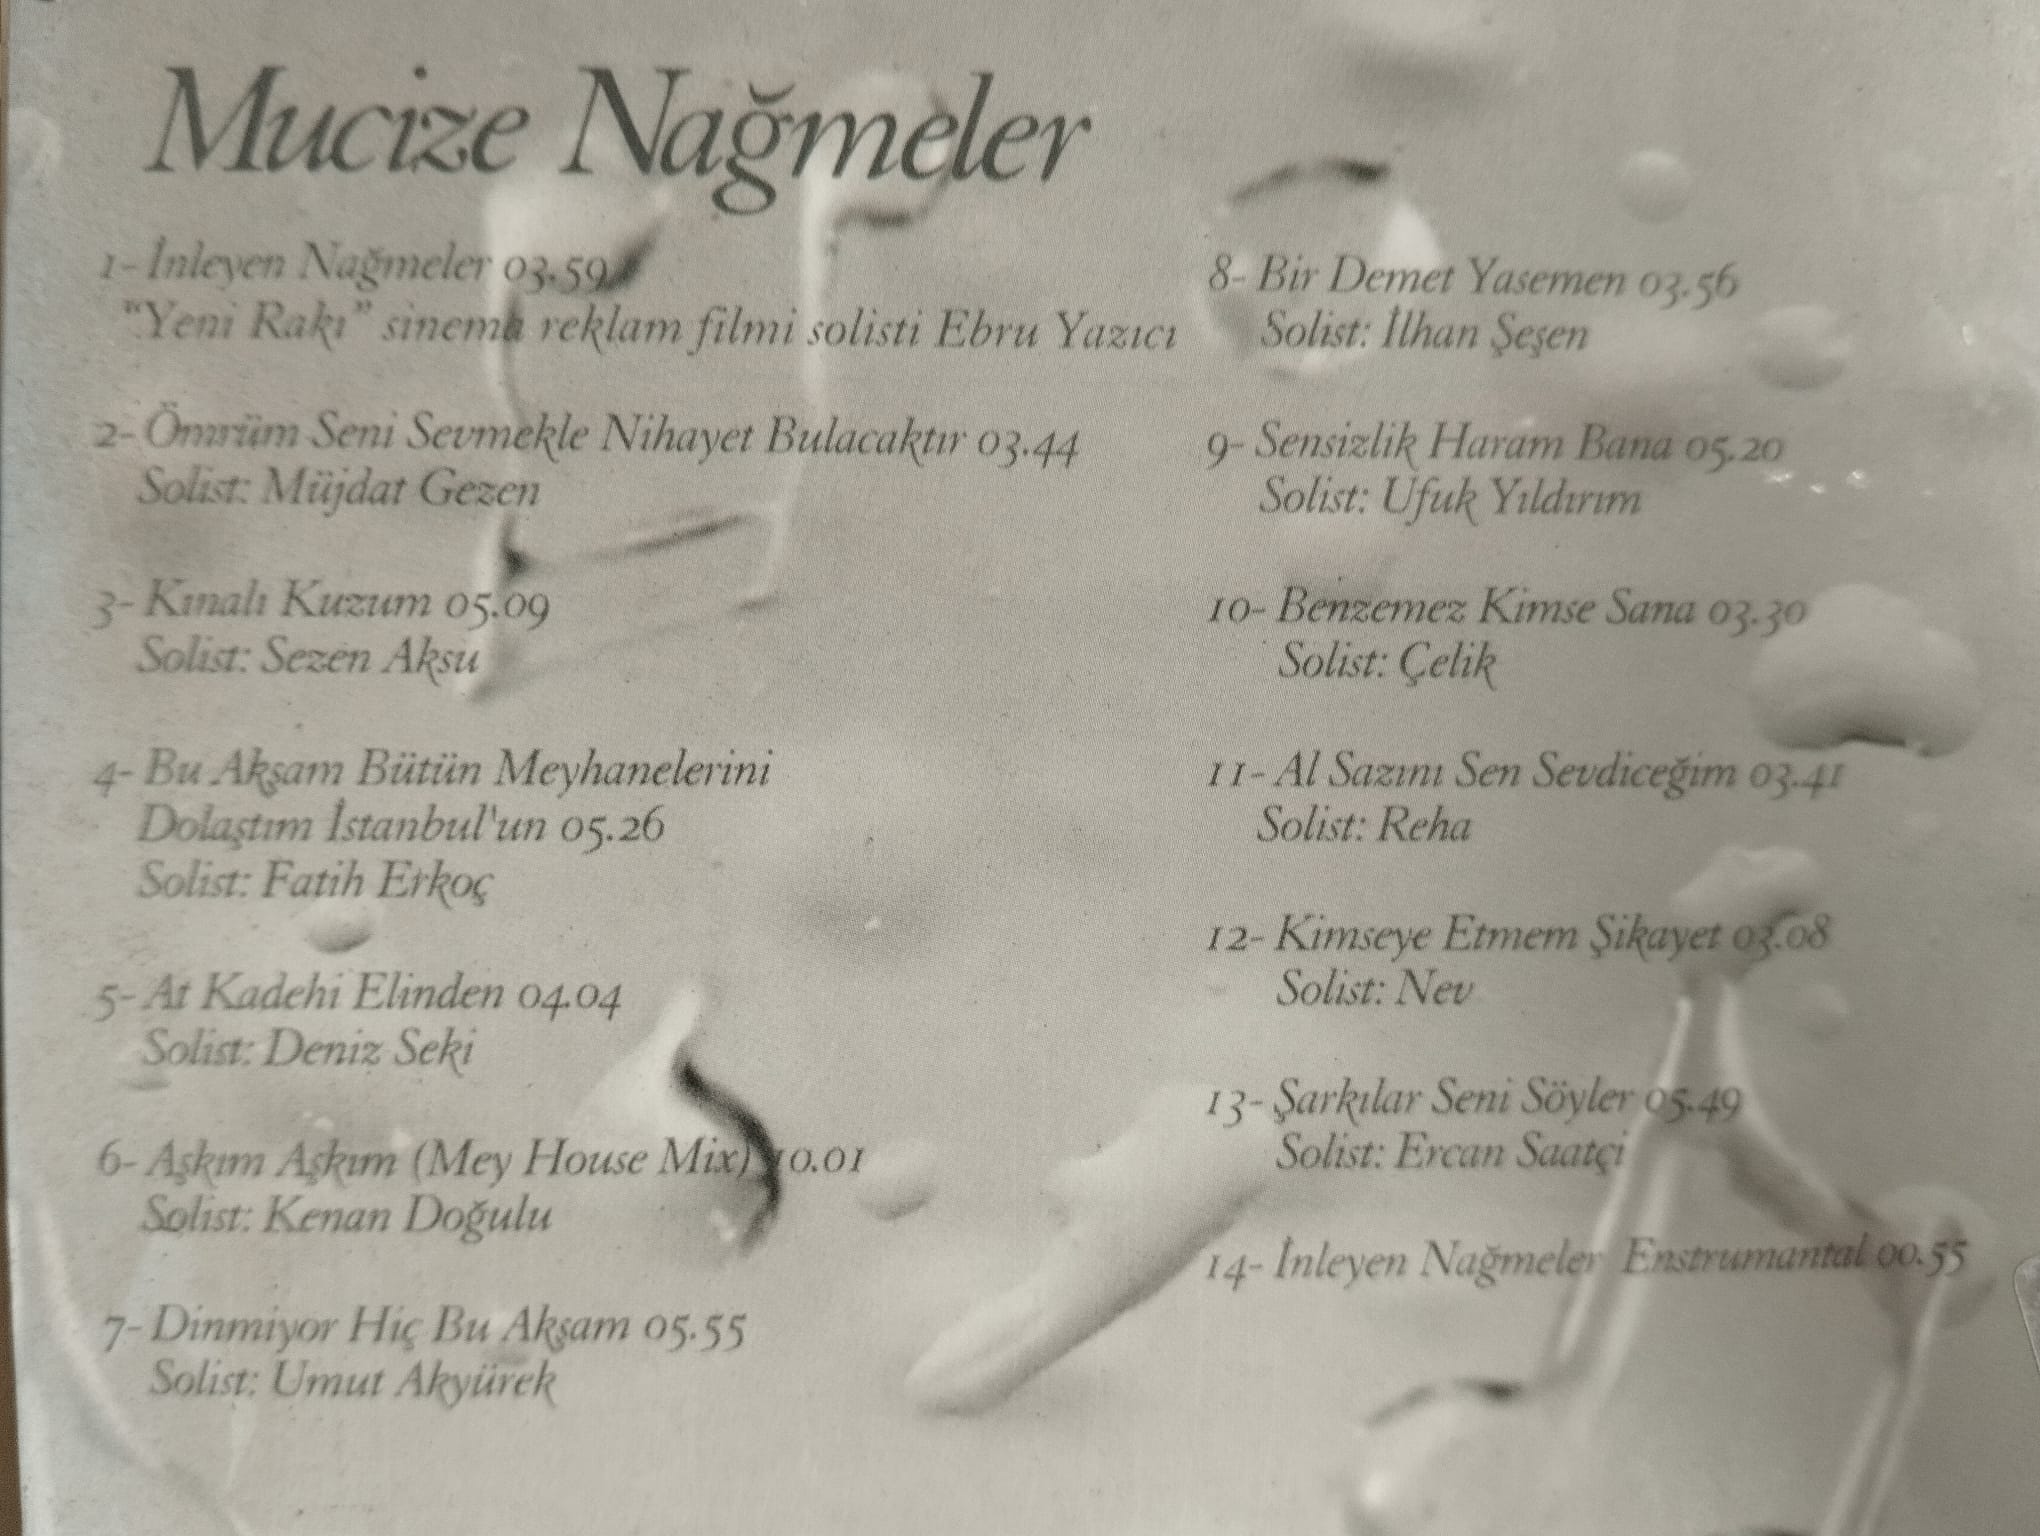 Mucize Nağmeler- 2006 Türkiye Basım - 2. El CD Albüm